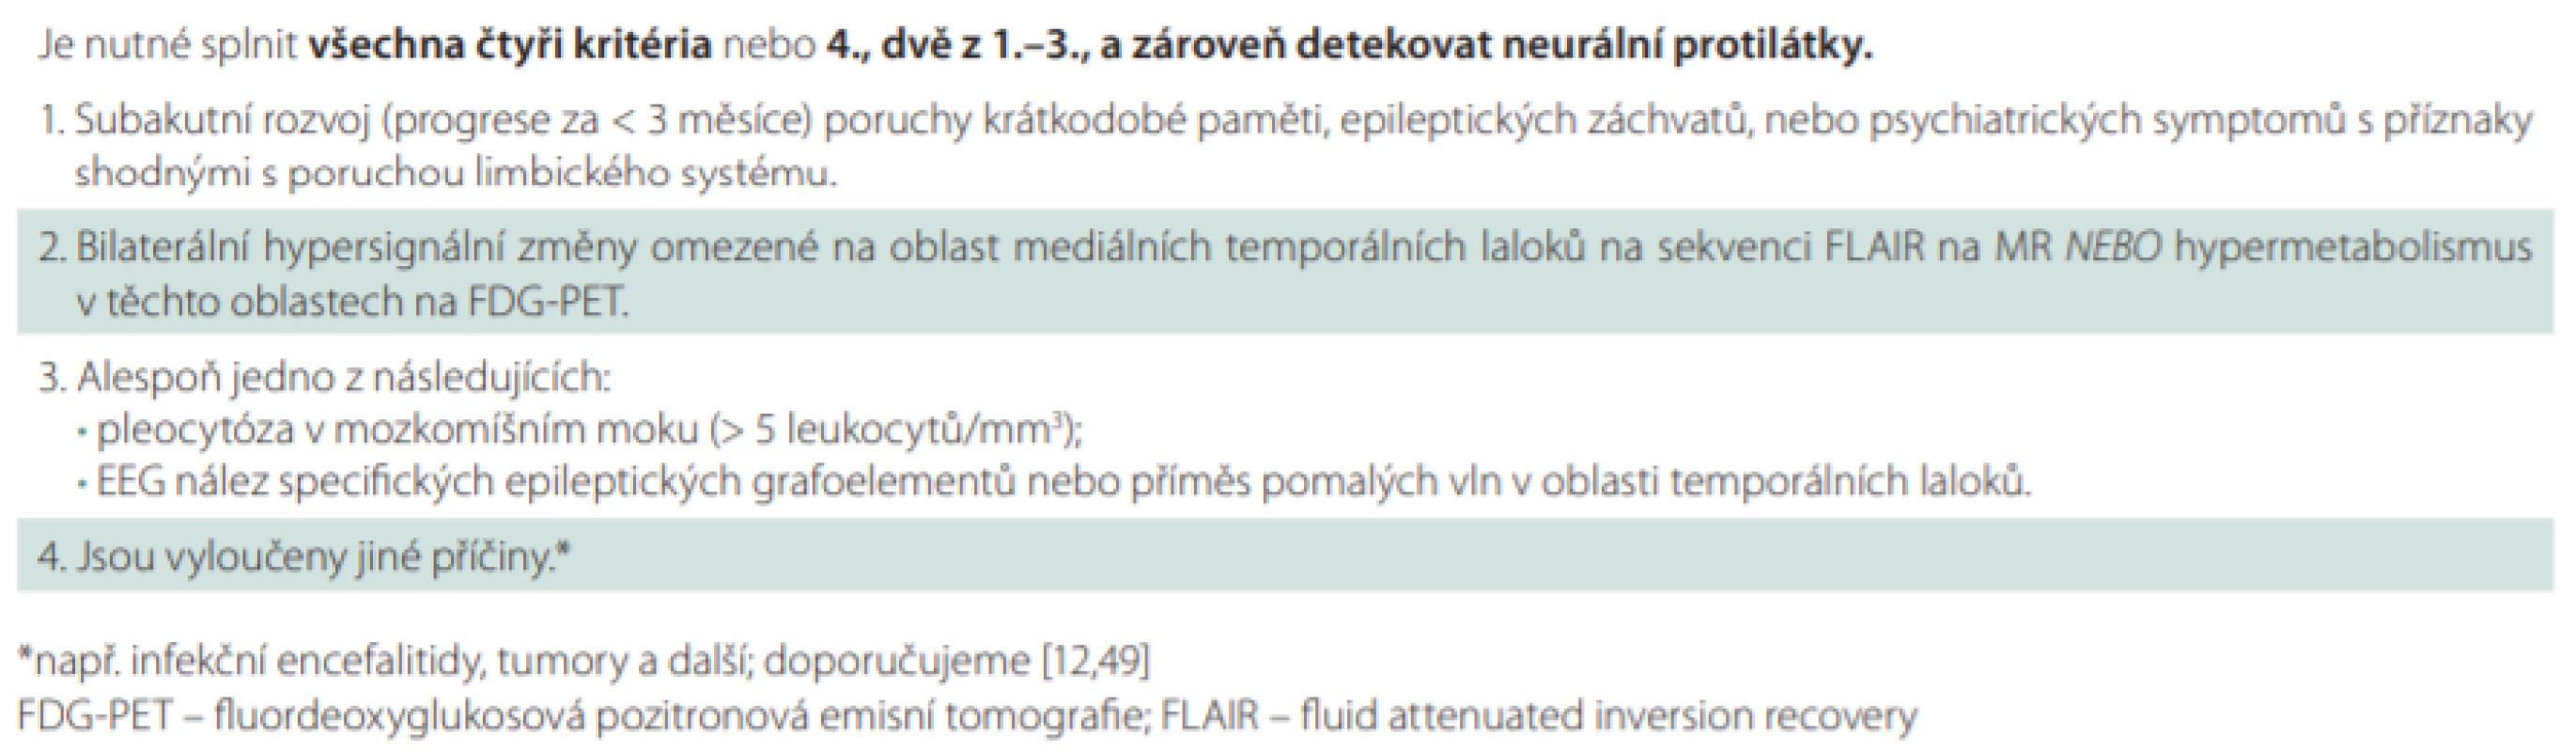 Diagnostická kritéria pro jistou autoimunitní limbickou encefalitidu, volně dle [12].